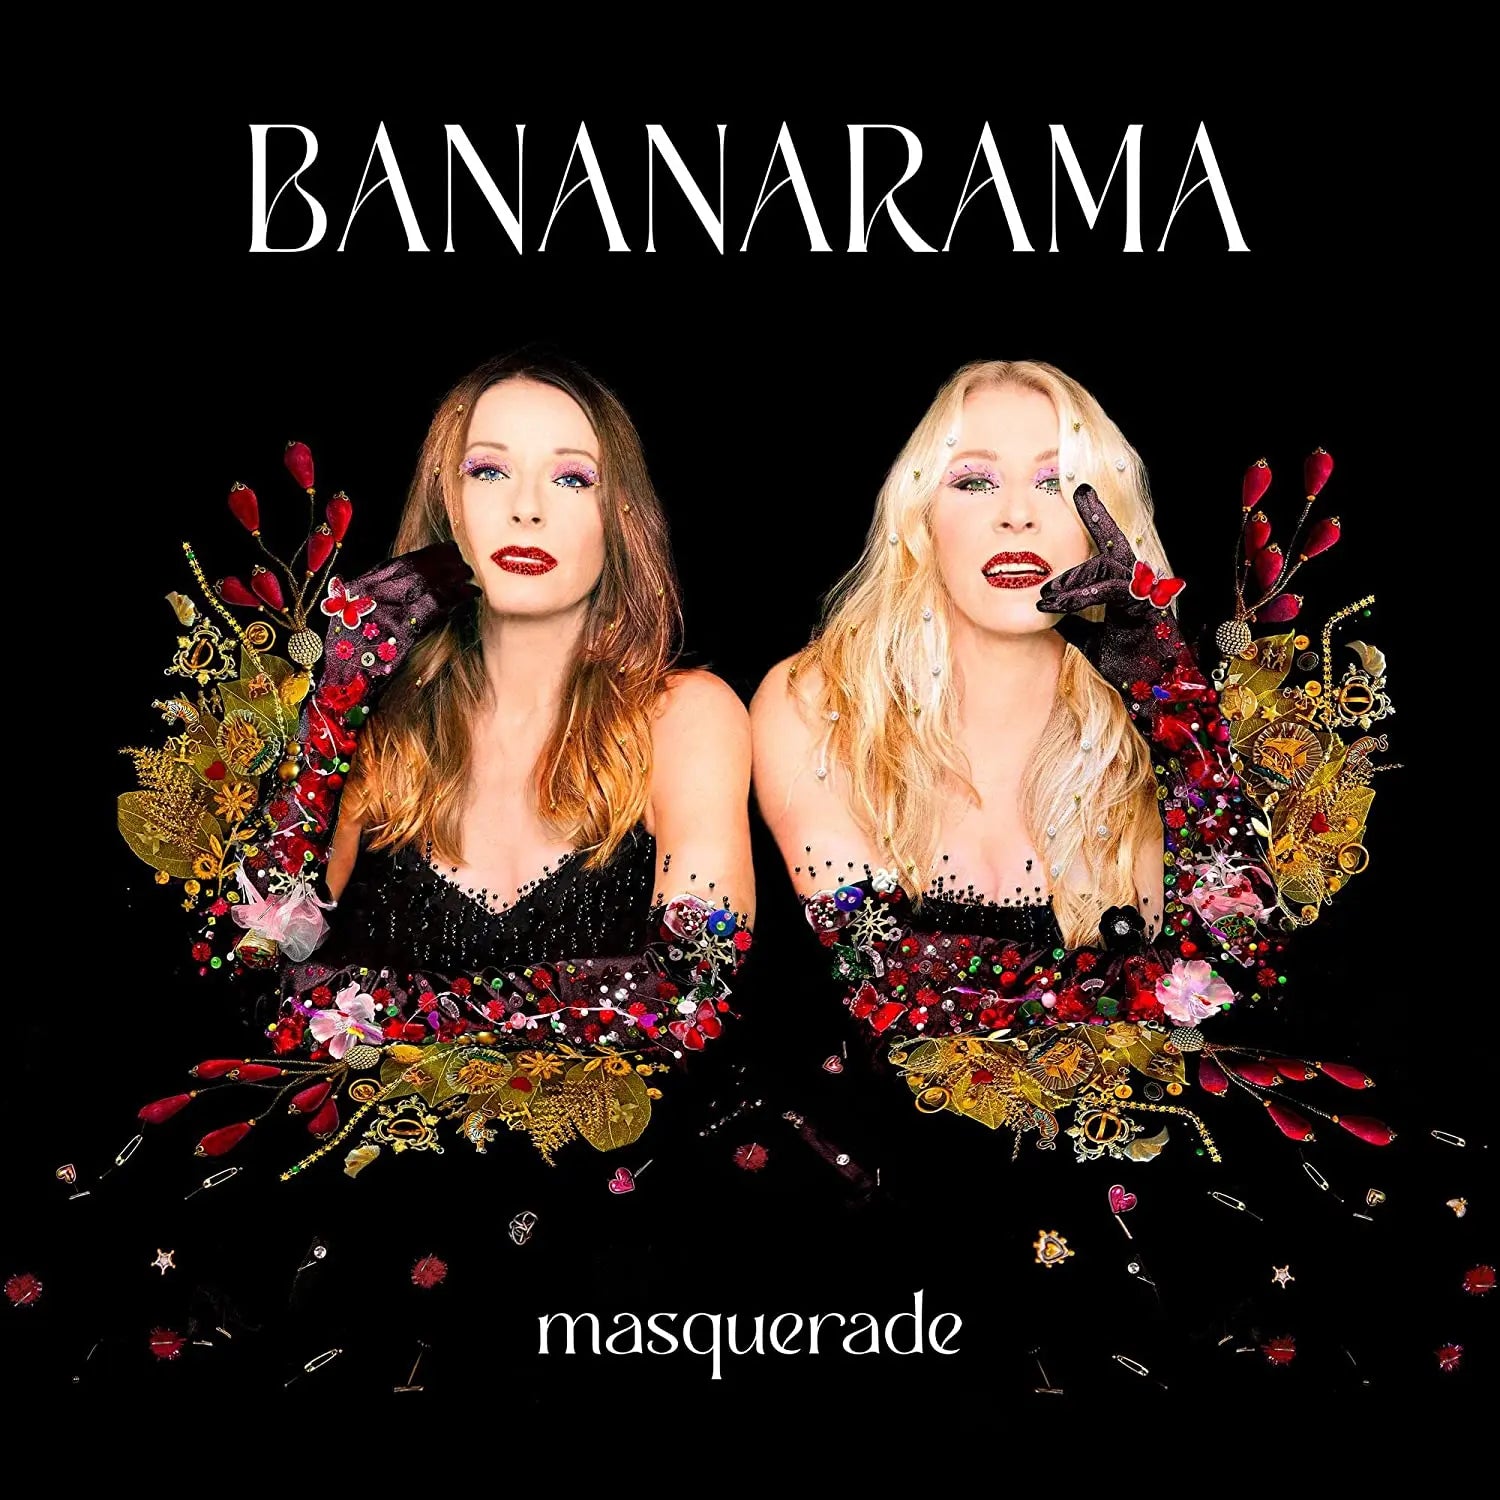 Bananarama - Masquerade [Limited Edition, Colored Vinyl, Red]